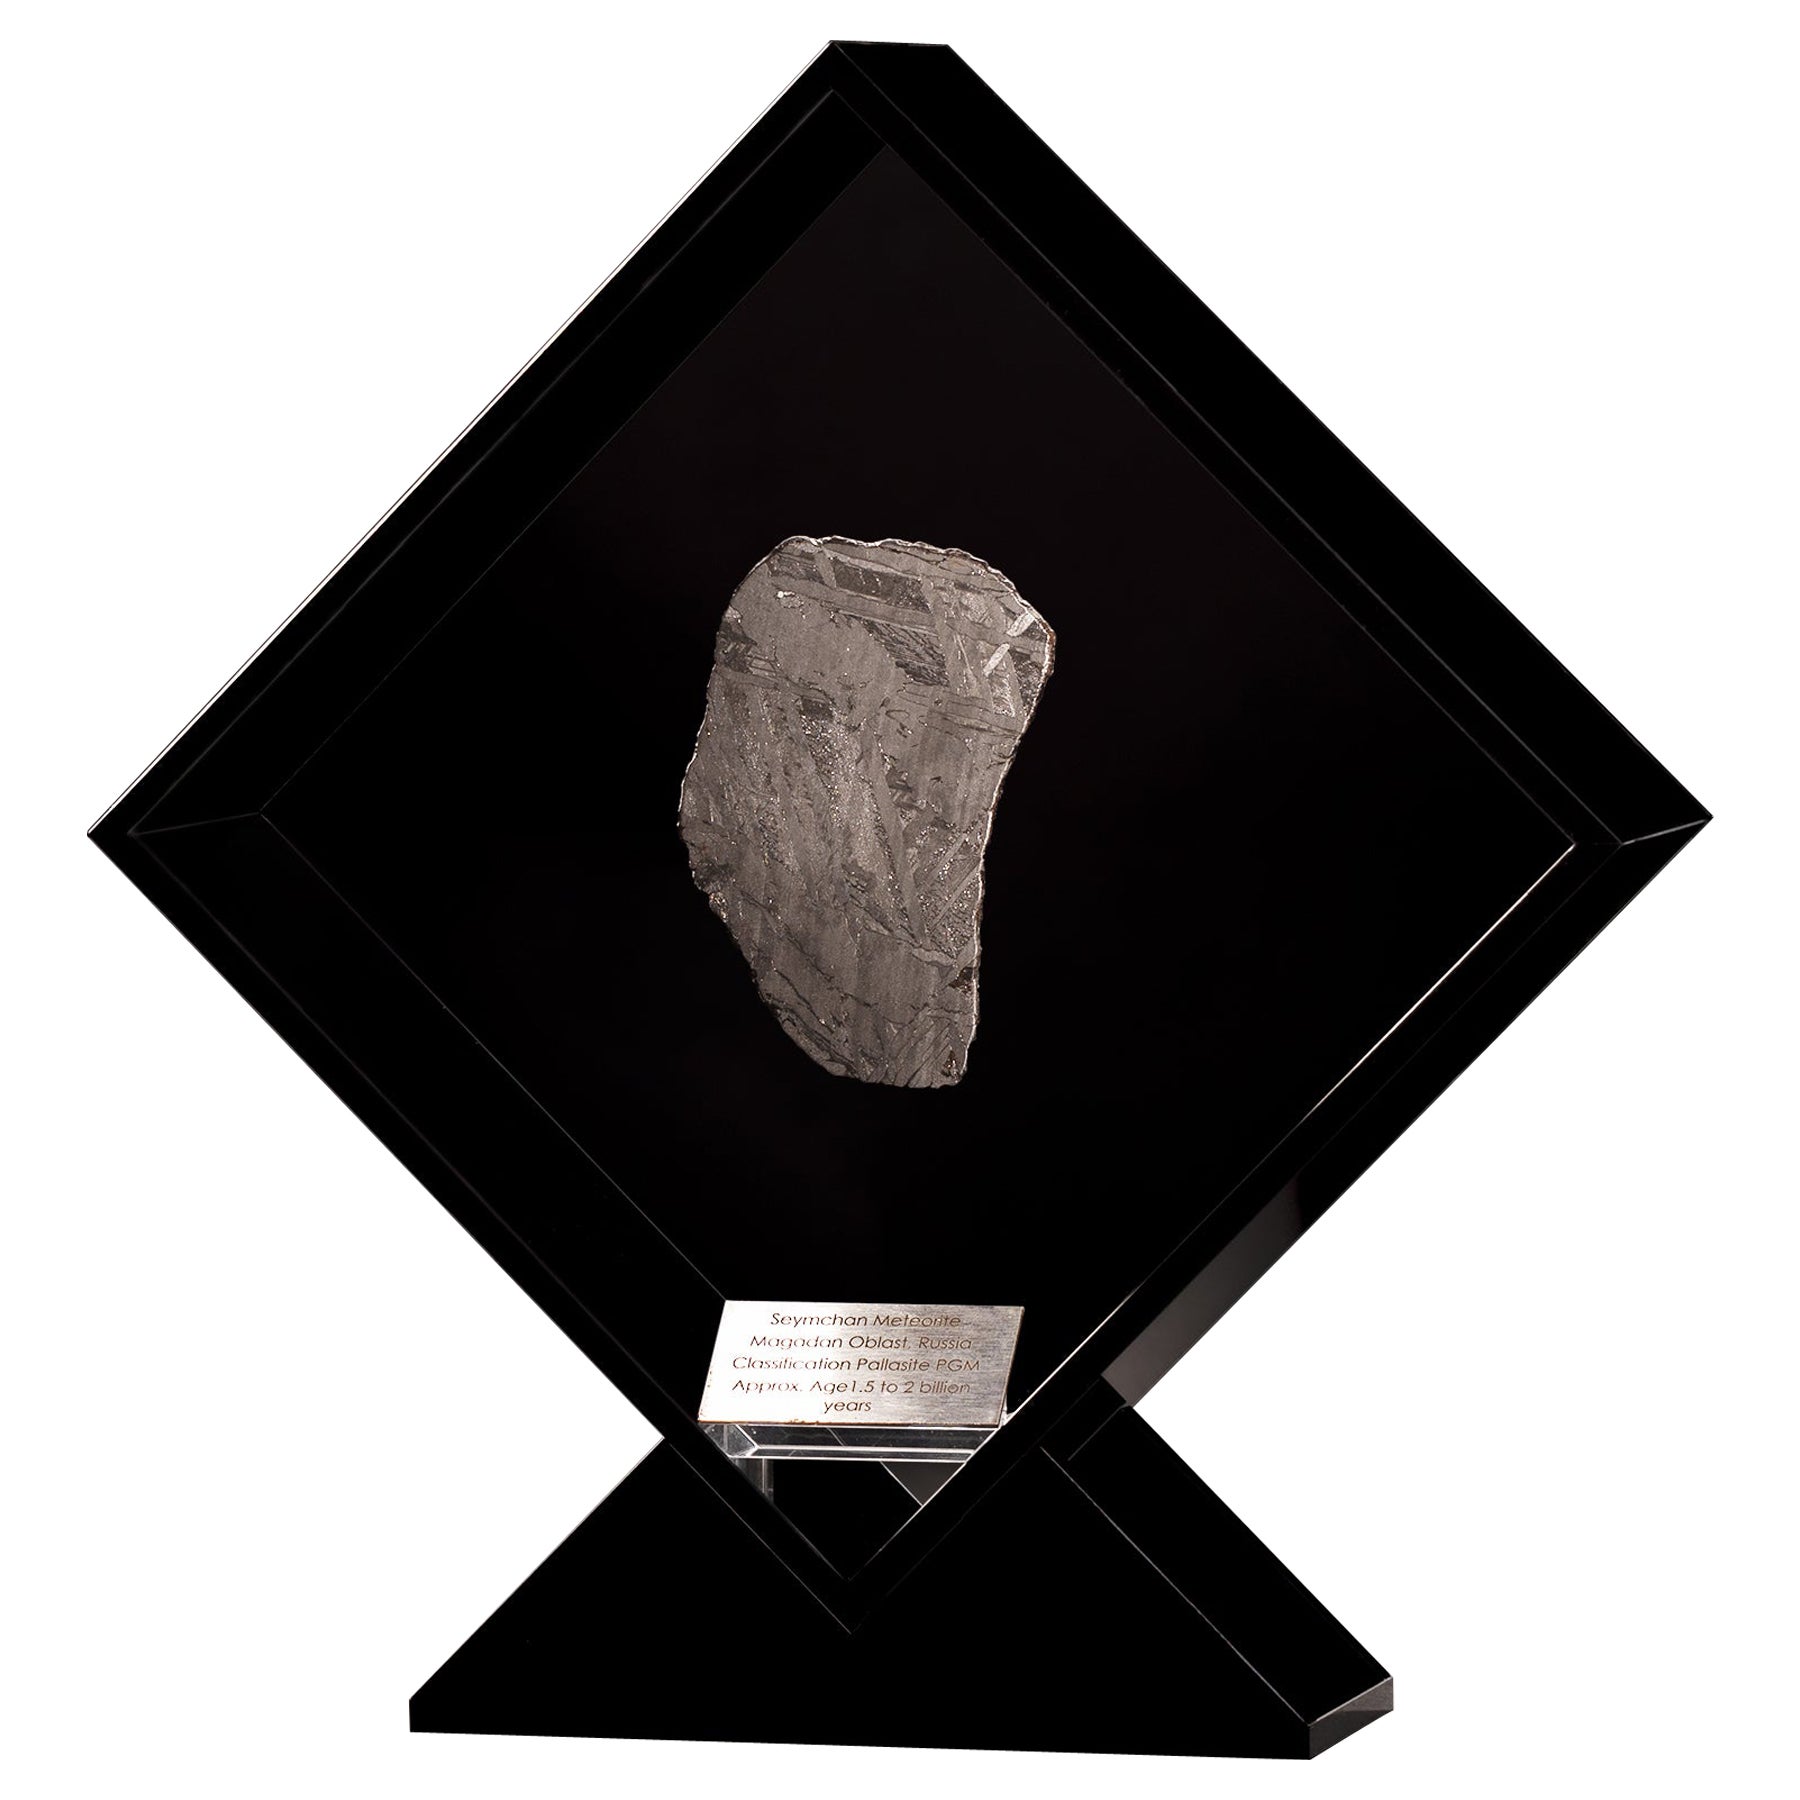 Am designs, météorite Seymchan dans un présentoir en acrylique noir